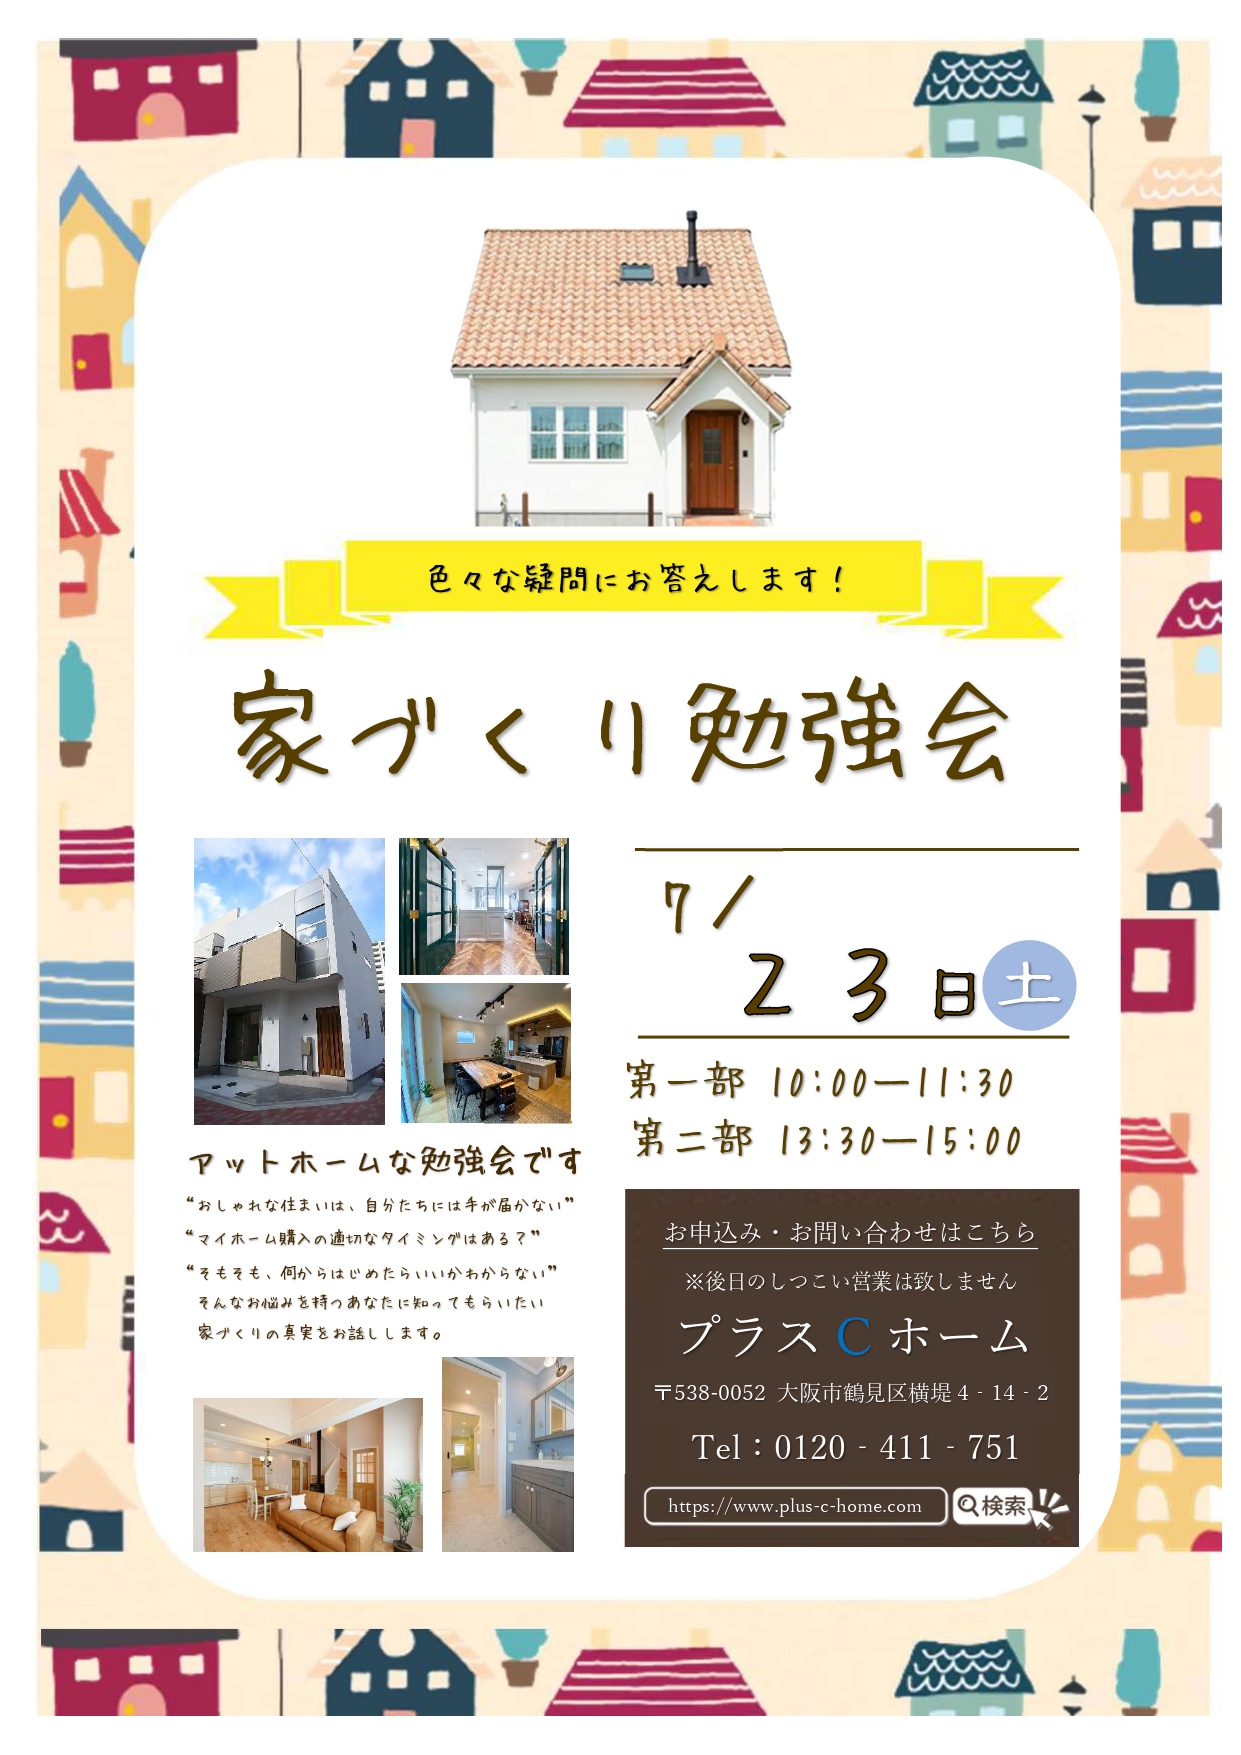 大阪市鶴見区で高断熱・高気密住宅を建てております工務店Plus C Homeが勉強会を開催します♪